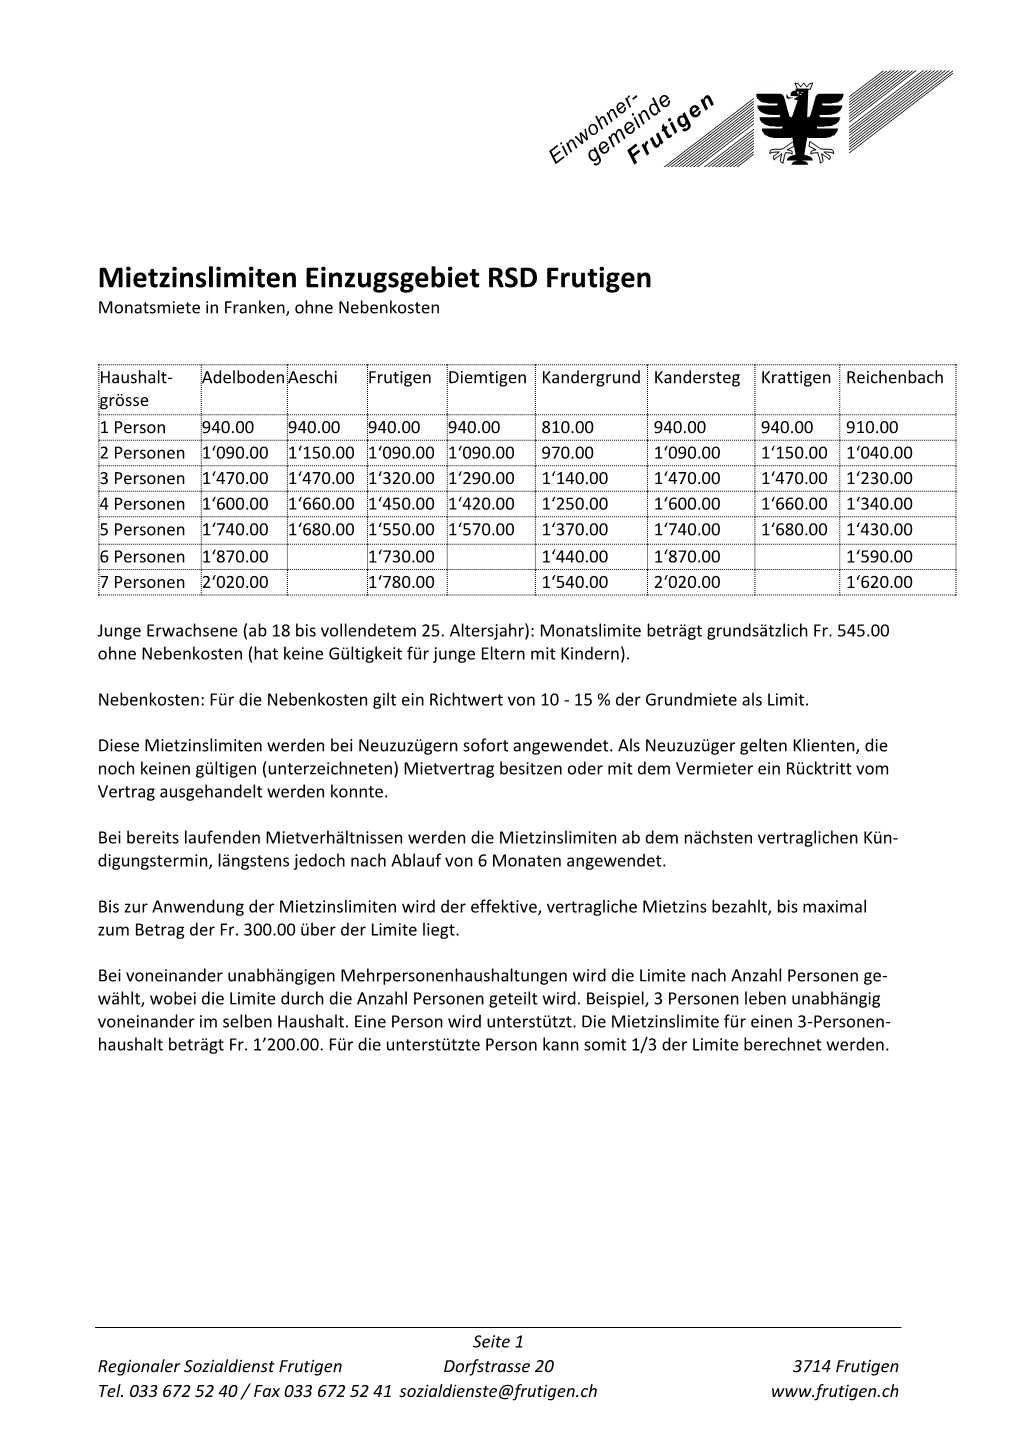 Mietzinslimiten Einzugsgebiet RSD Frutigen Monatsmiete in Franken, Ohne Nebenkosten